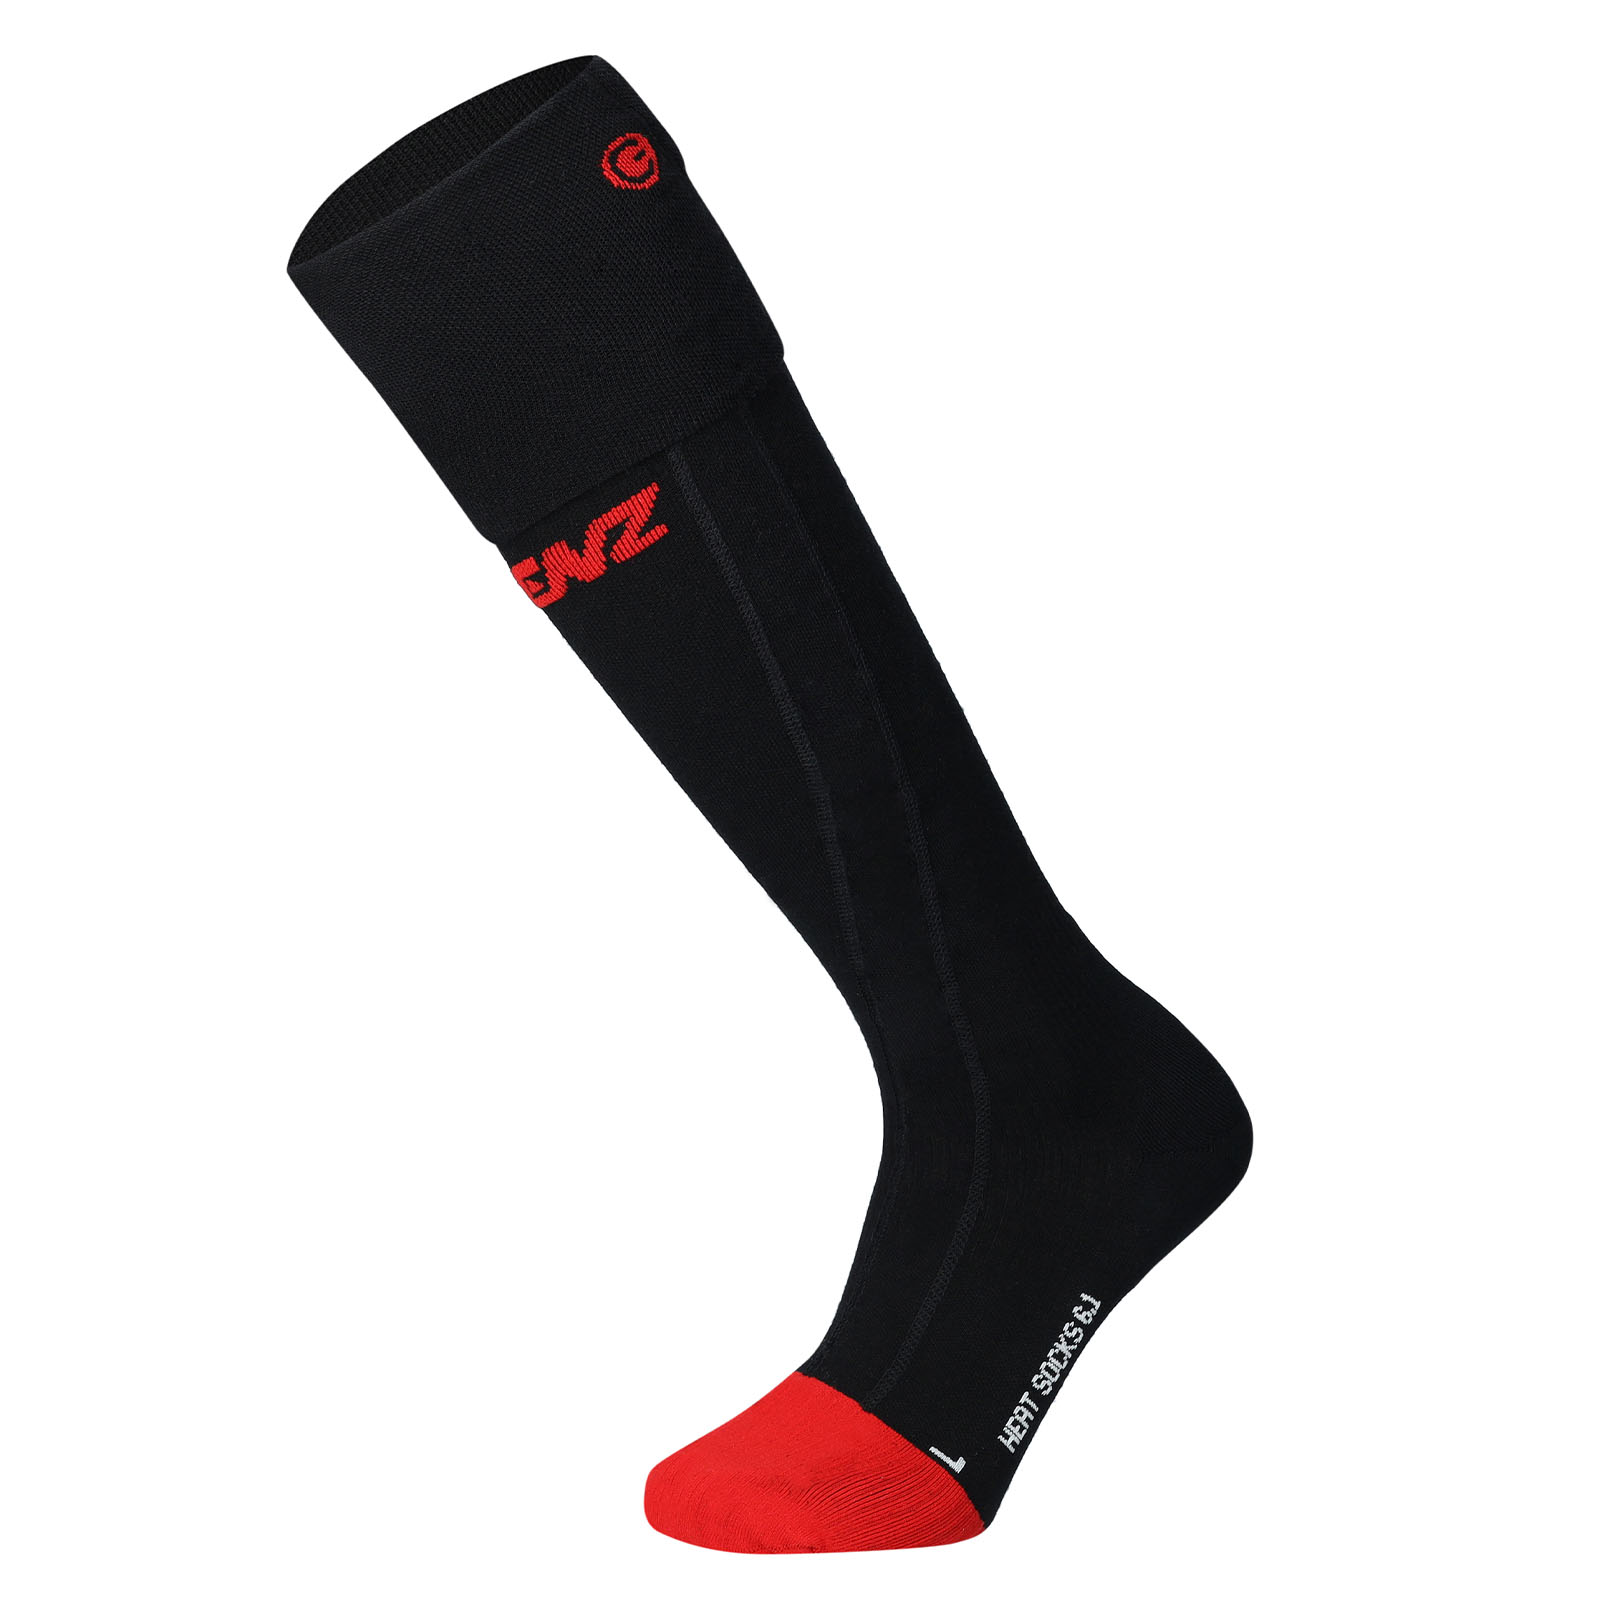 Lenz Heat Sock 6.1 Toe Cap Merino Compression Heizsocken schwarz